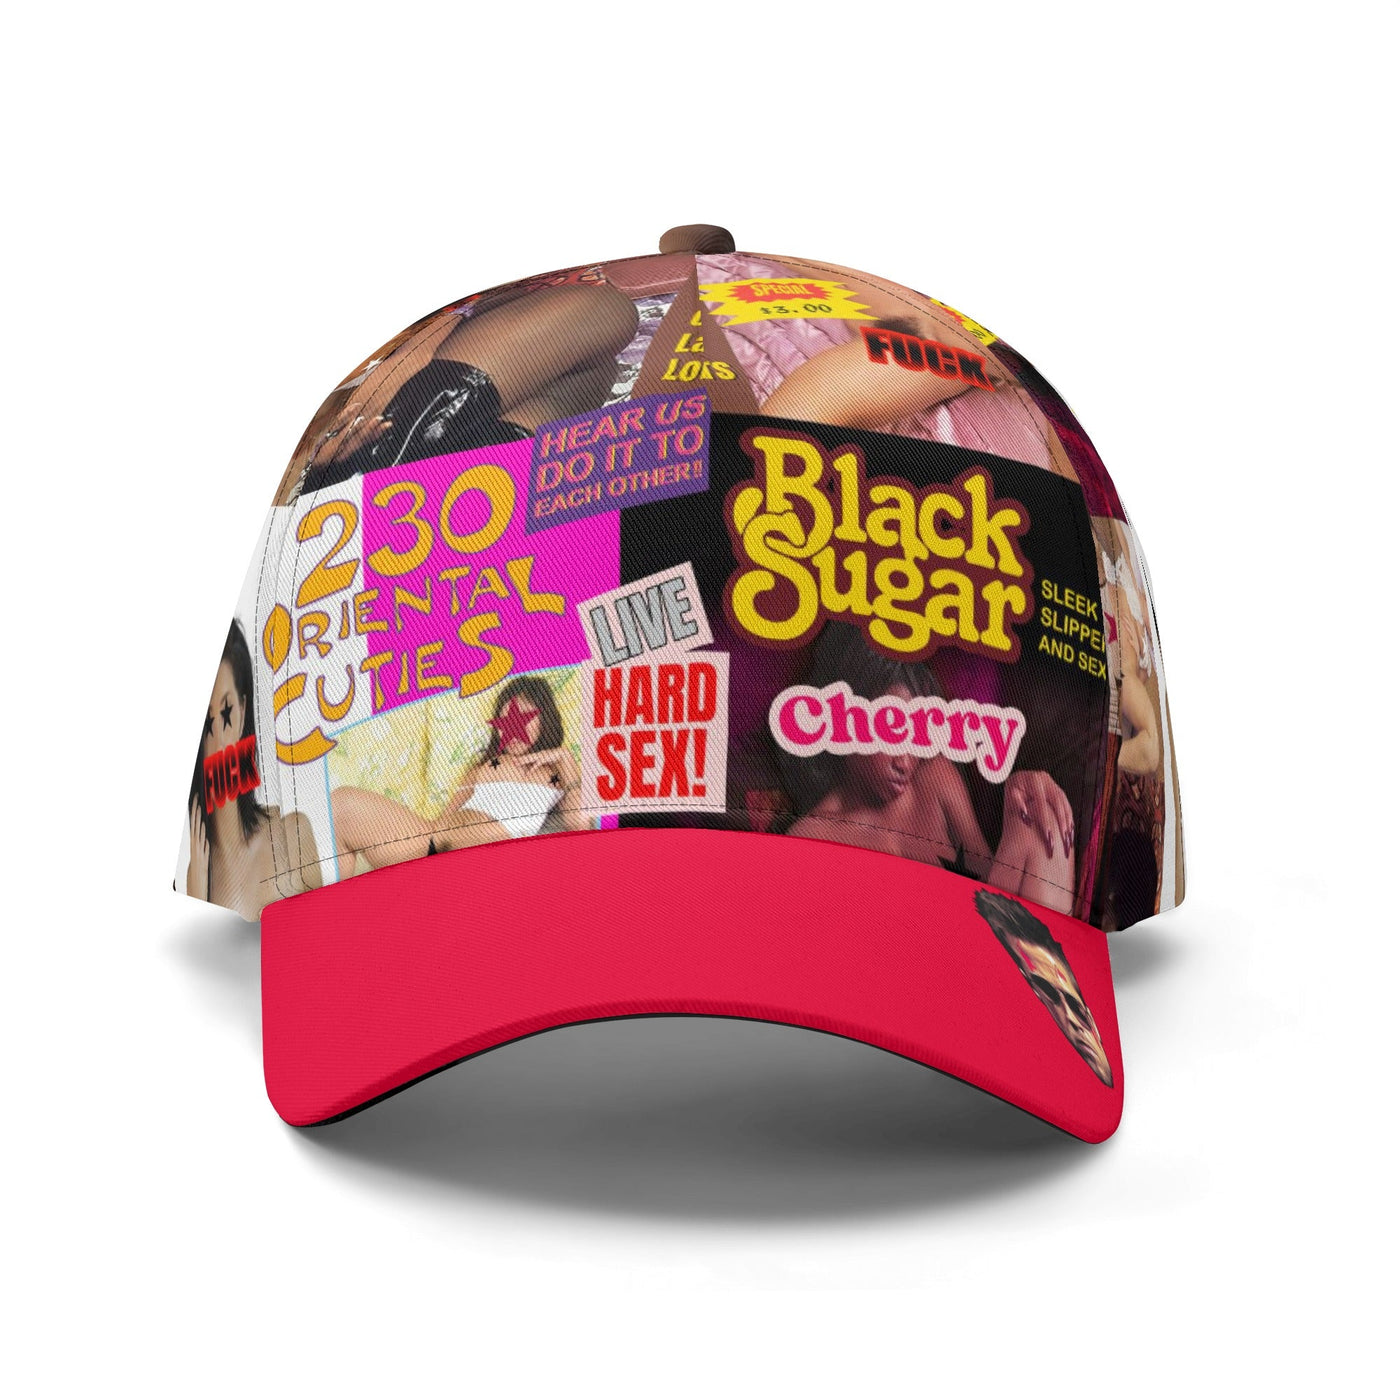 Tyler Durden Black Sugar Hat - Inspired by Fight Club